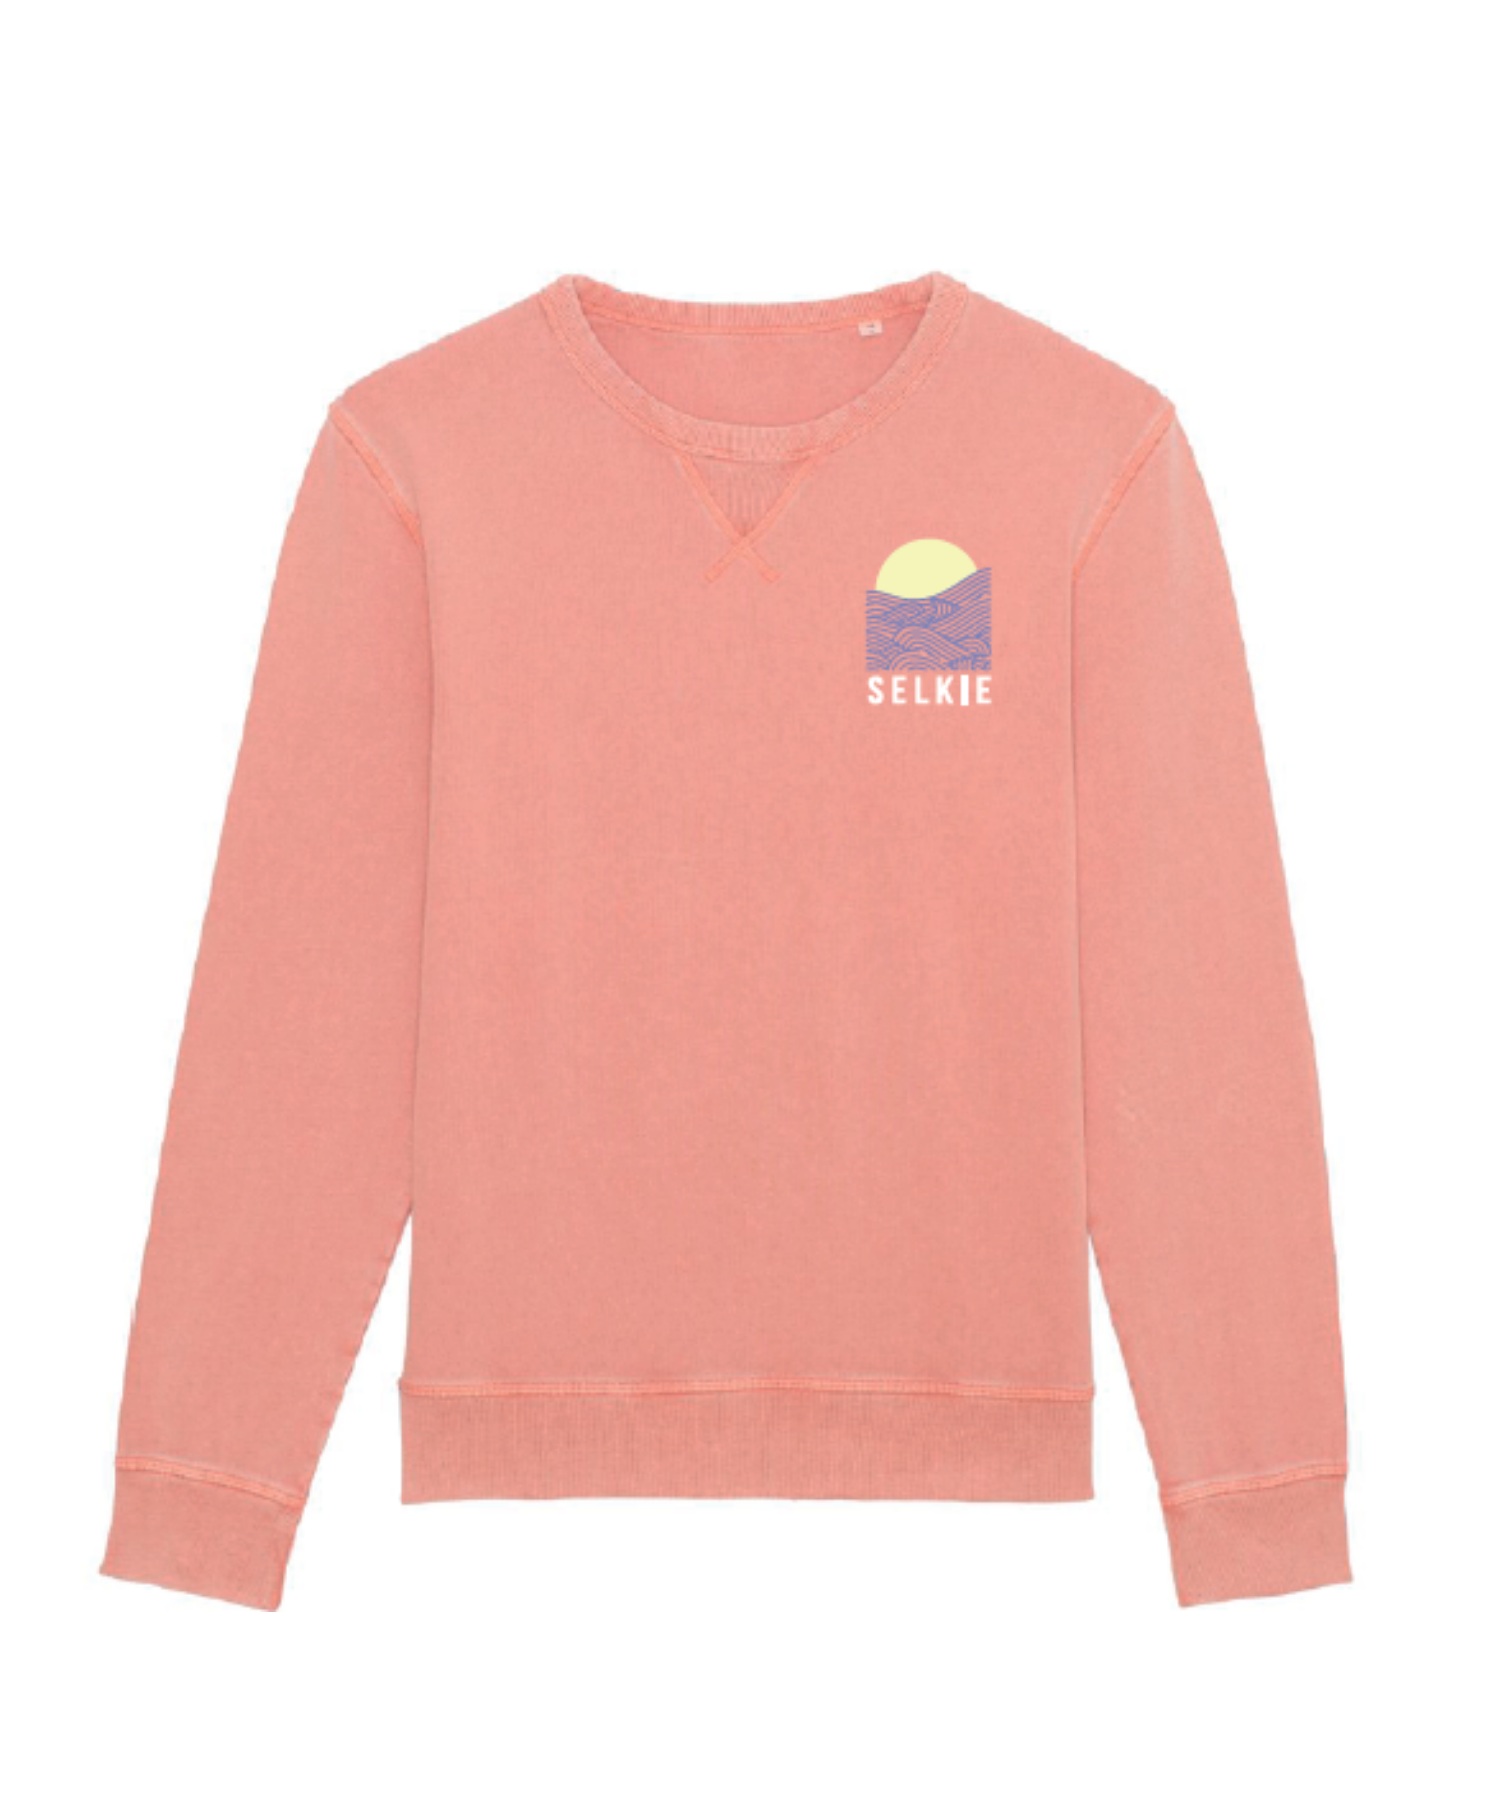 Unisex Sweatshirt in Summer Vintage Peach